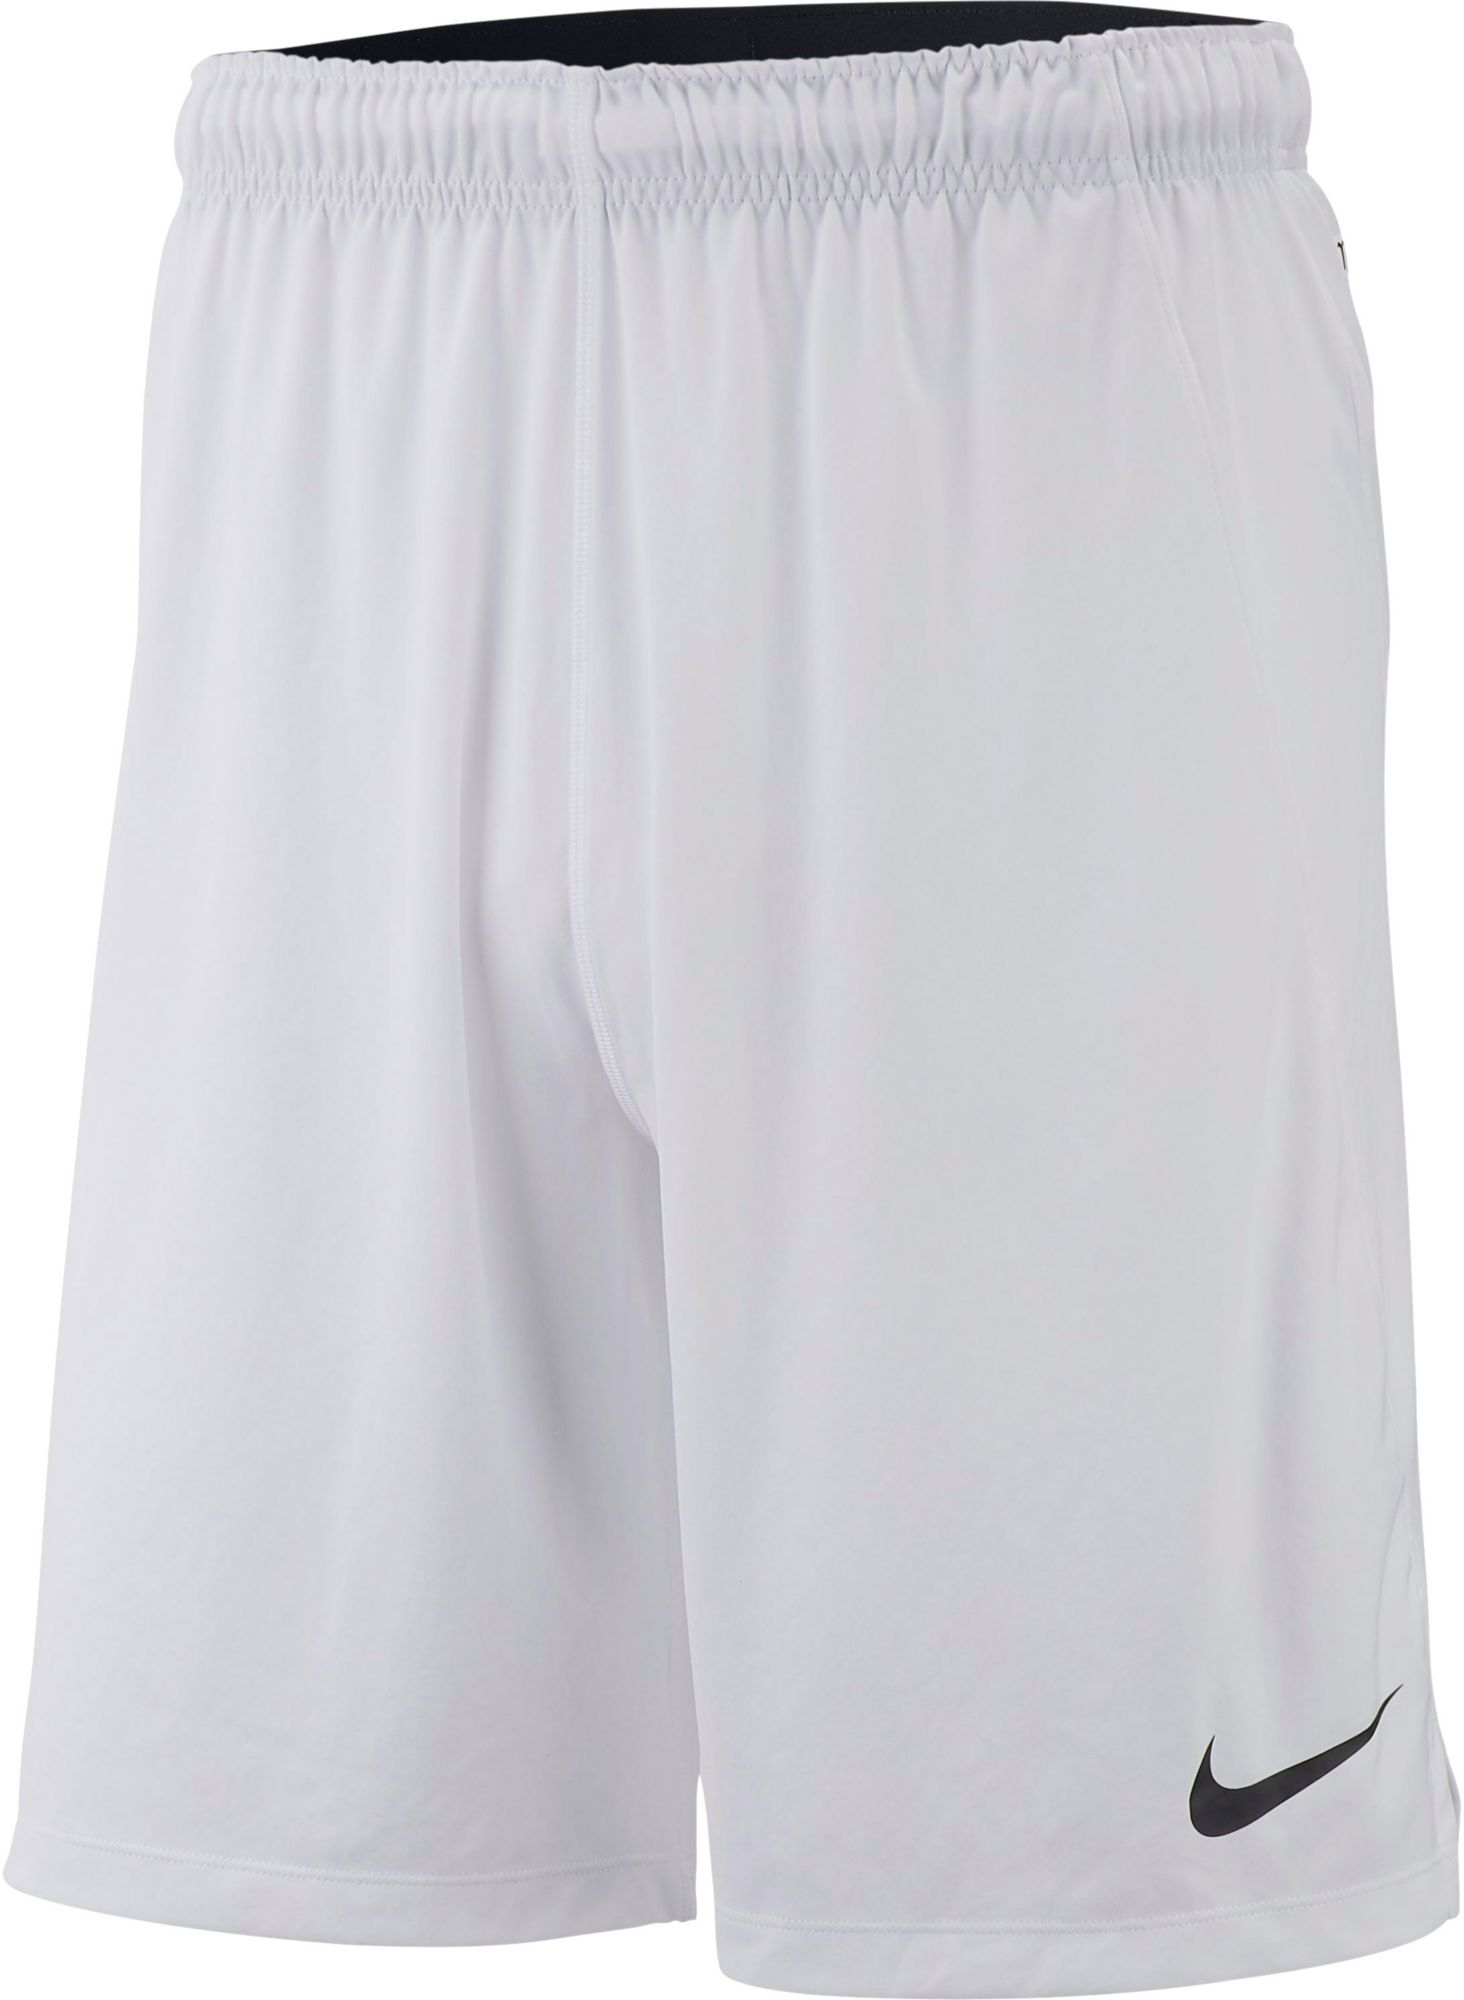 Nike Pro Men's Flag Football Shorts 